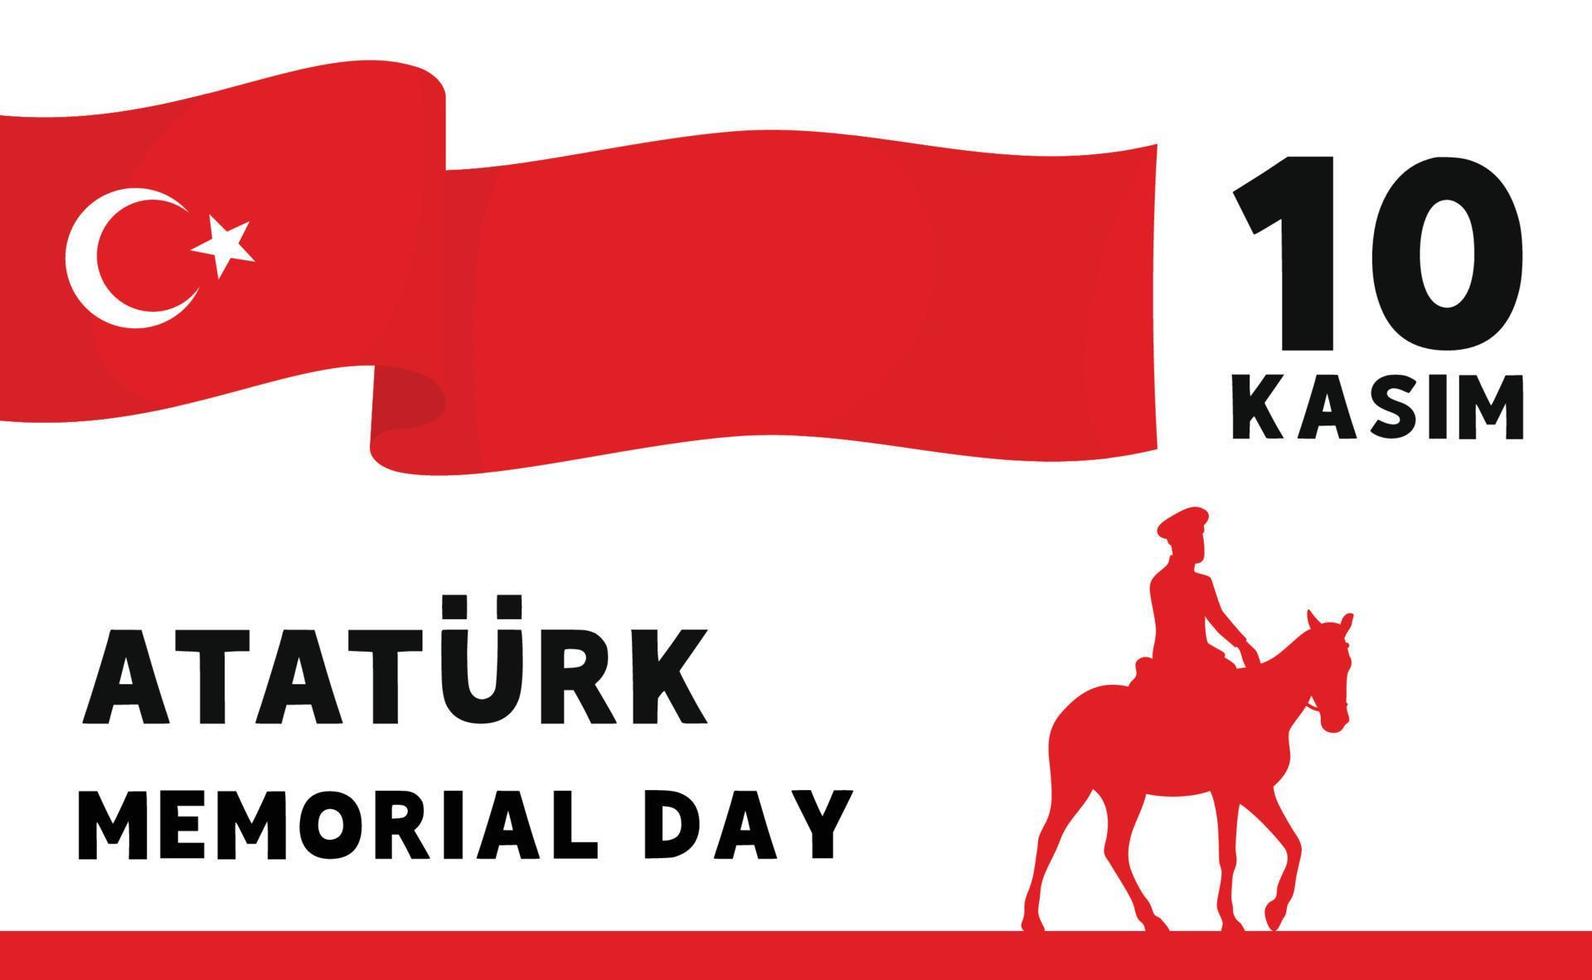 ataturk memoriale giorno 10 kasim bandiera vettore illustrazione